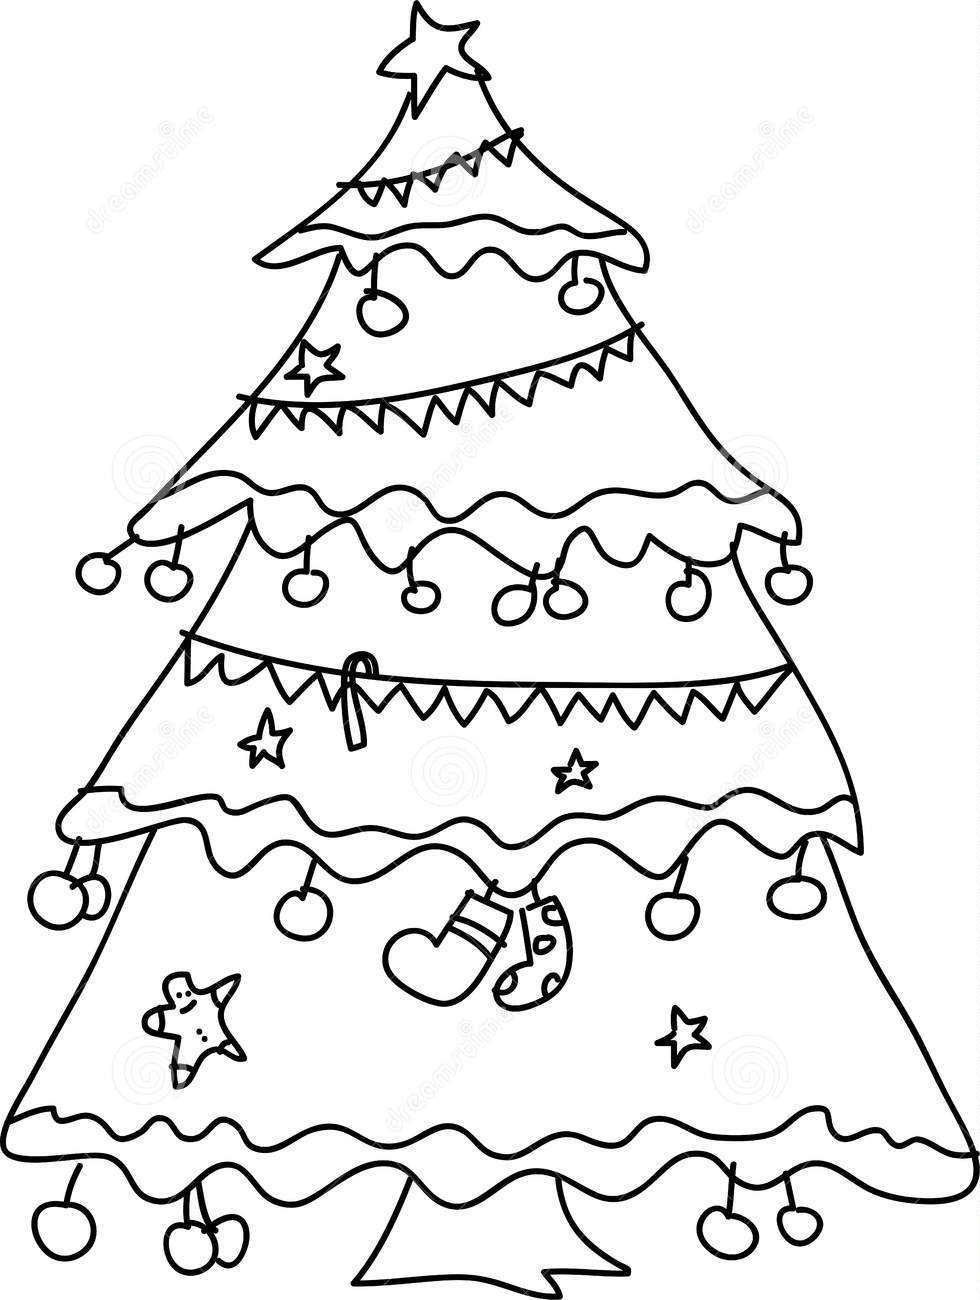 Πρότυπα Χριστουγεννιάτικων δέντρων της Πρωτοχρονιάς για την ανάληψη στον τοίχο, Παράδειγμα 2